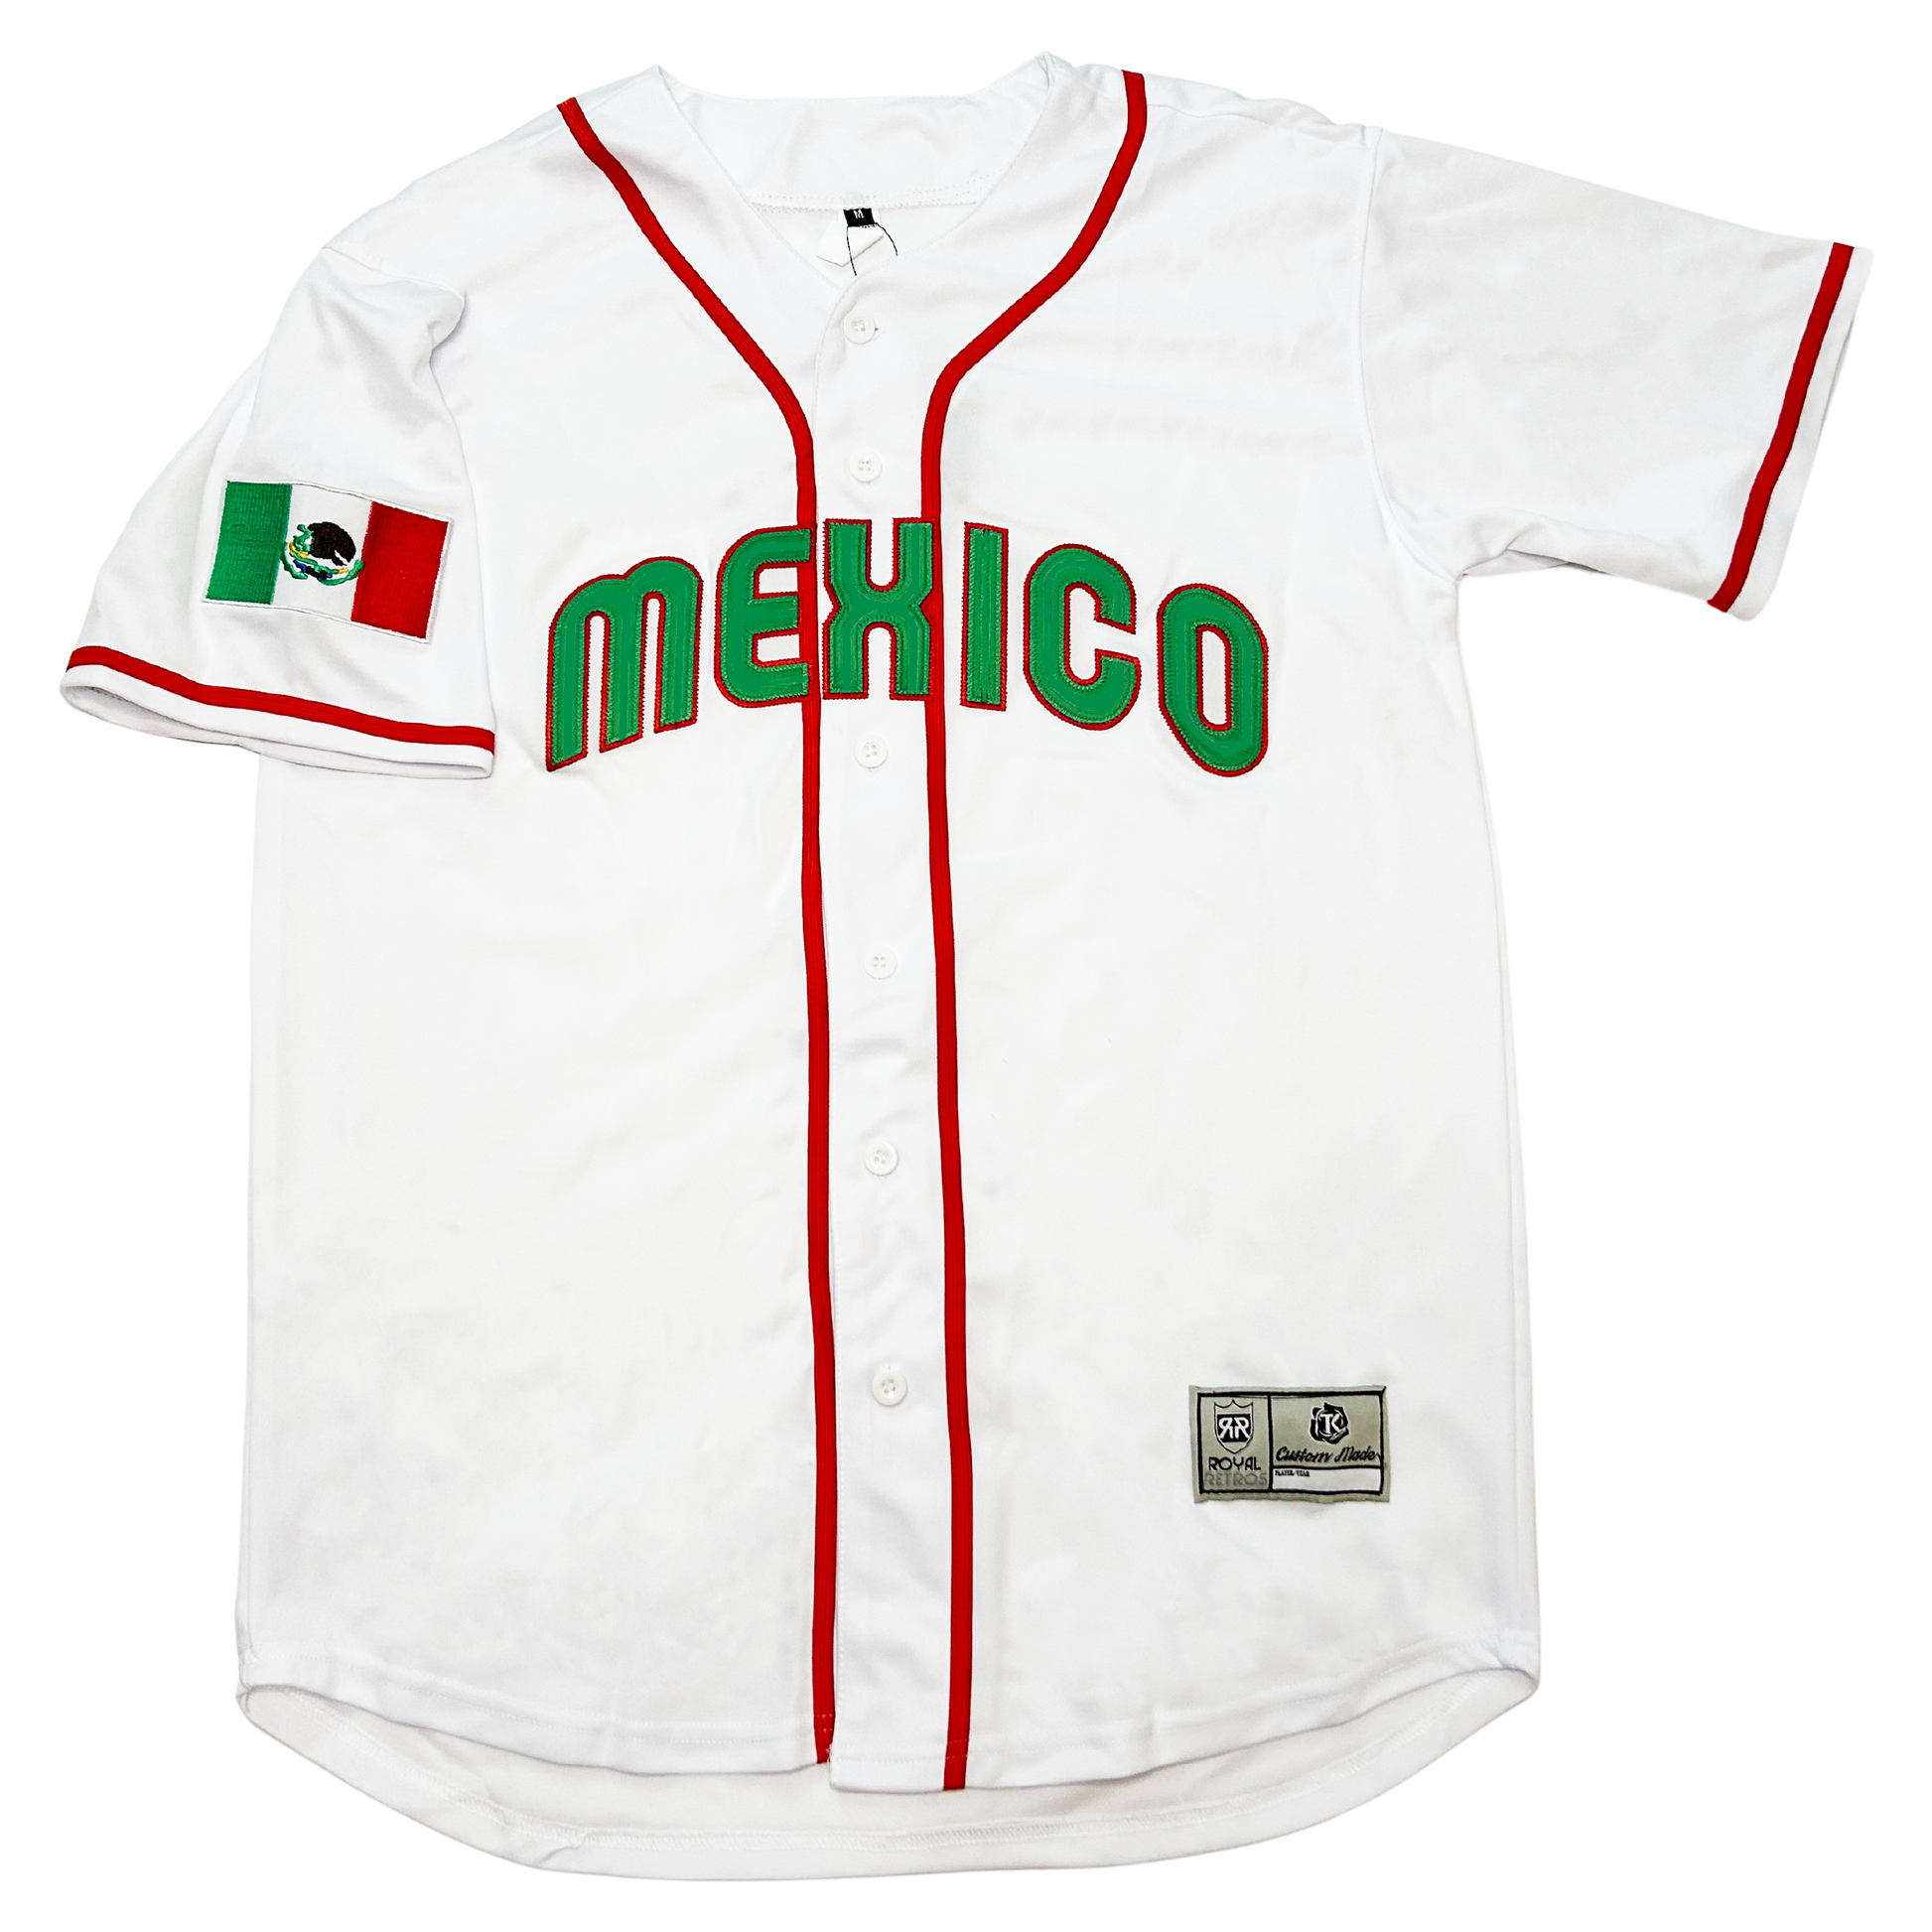 mexico baseball jerseys